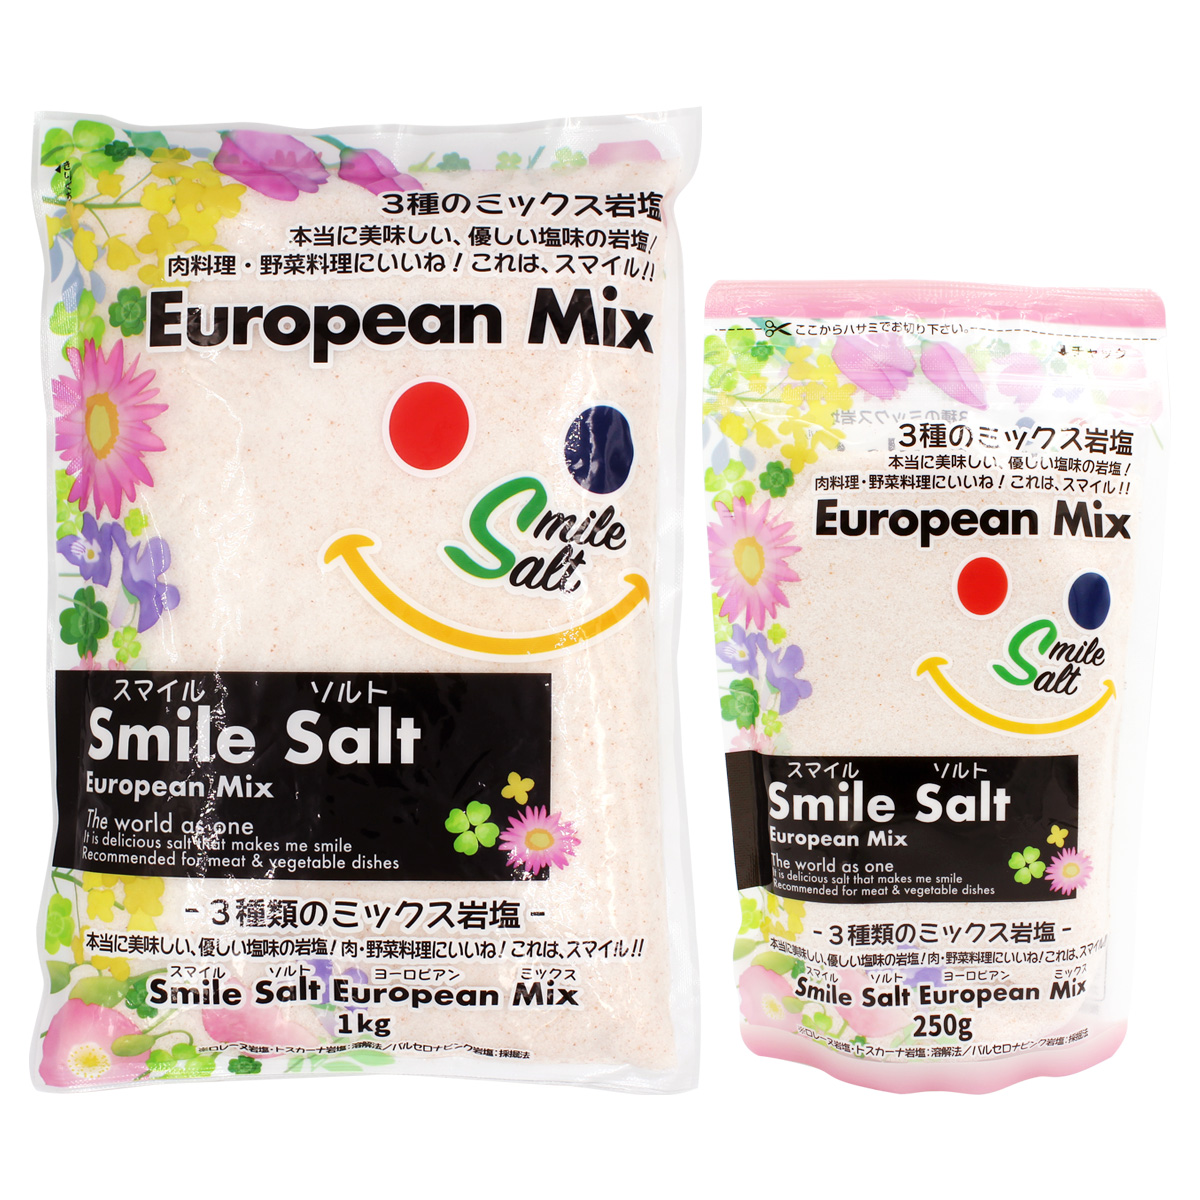 Smile Salt European Mix